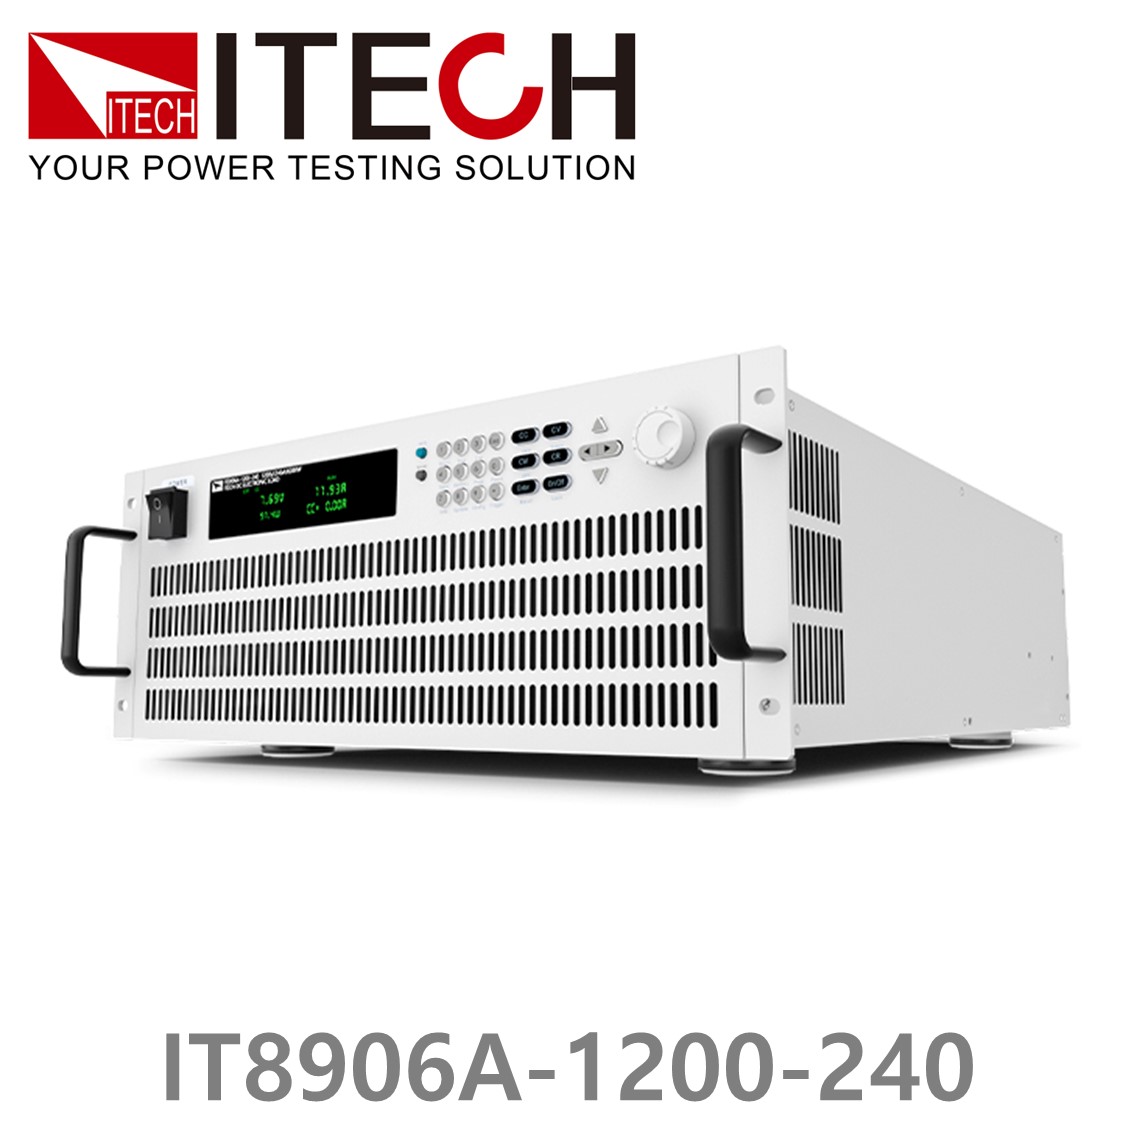 [ ITECH ] IT8906A-1200-240  고성능 고전력 DC 전자로드 1200V/240A/6kW (4U)